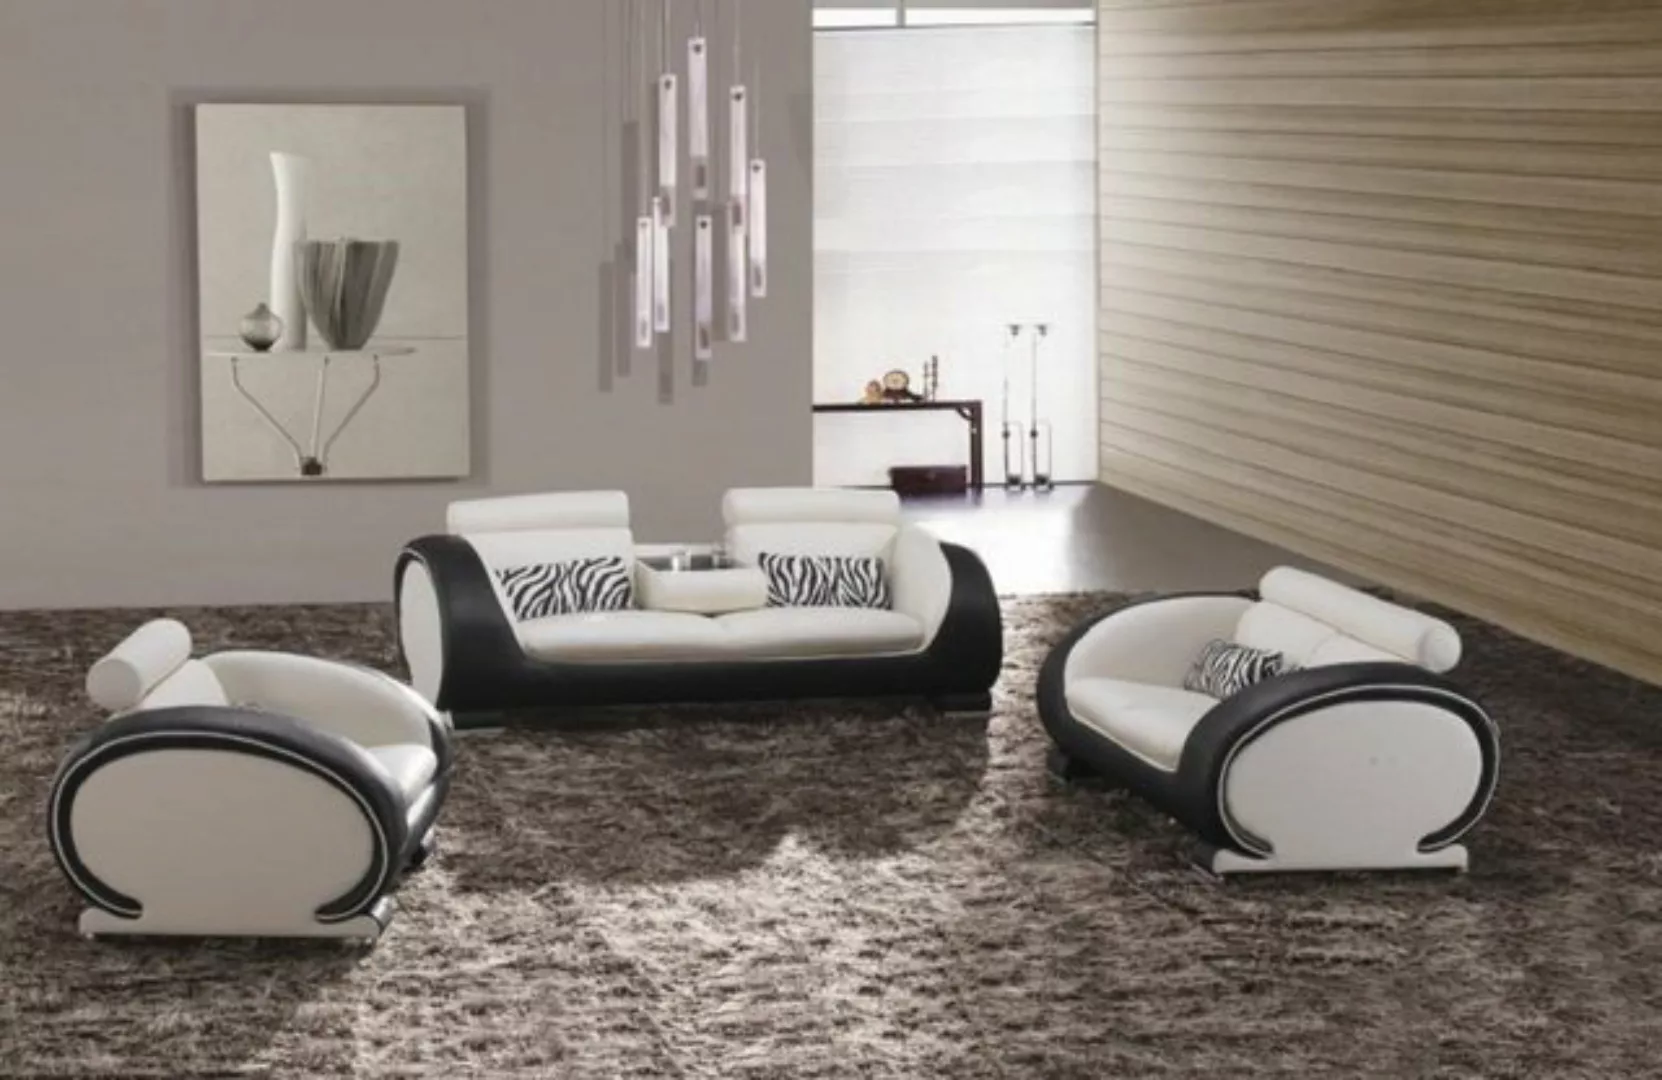 JVmoebel Sofa Sofas 3+2+1 Sitzer Set Design Sofas Polster Couchen Leder Mod günstig online kaufen